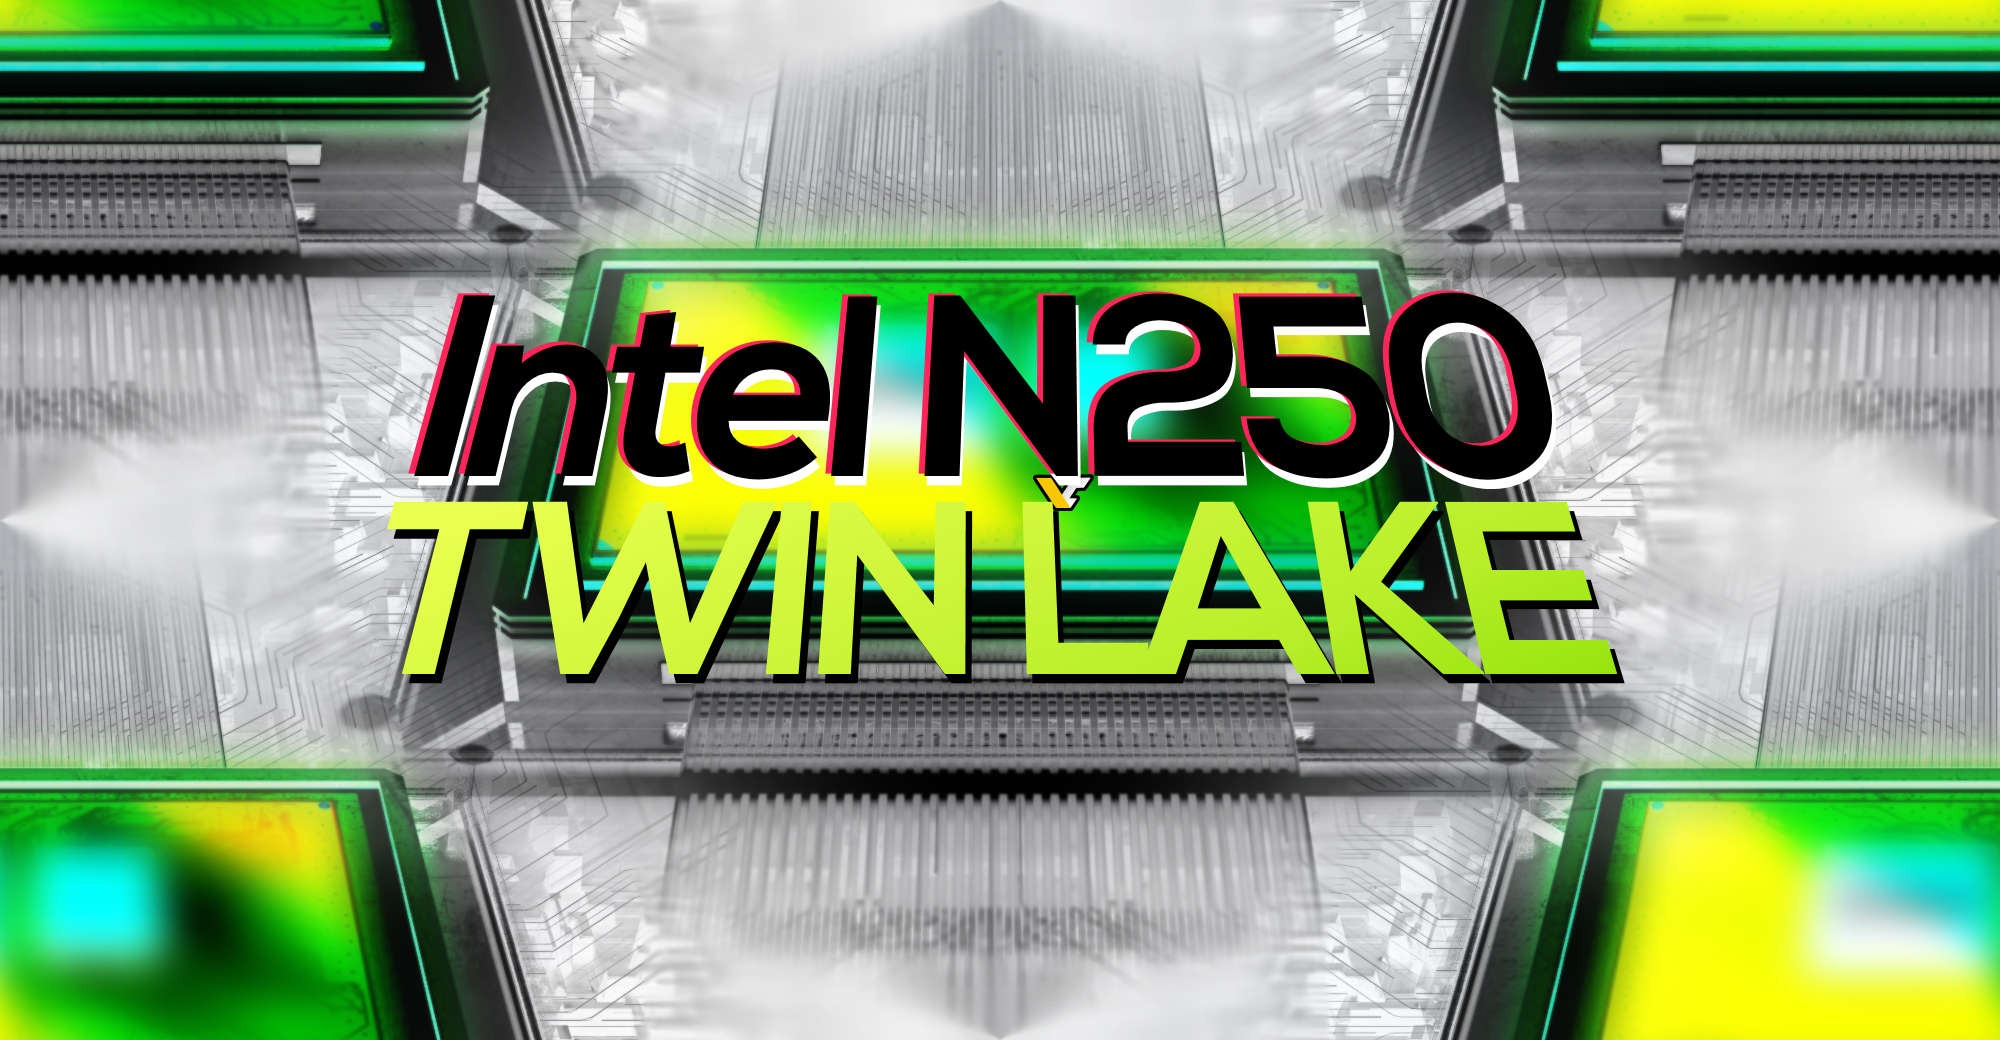 CPU Intel N250 - Một phần của dòng sản phẩm Twin Lake “Alder Lake-N Refresh” 